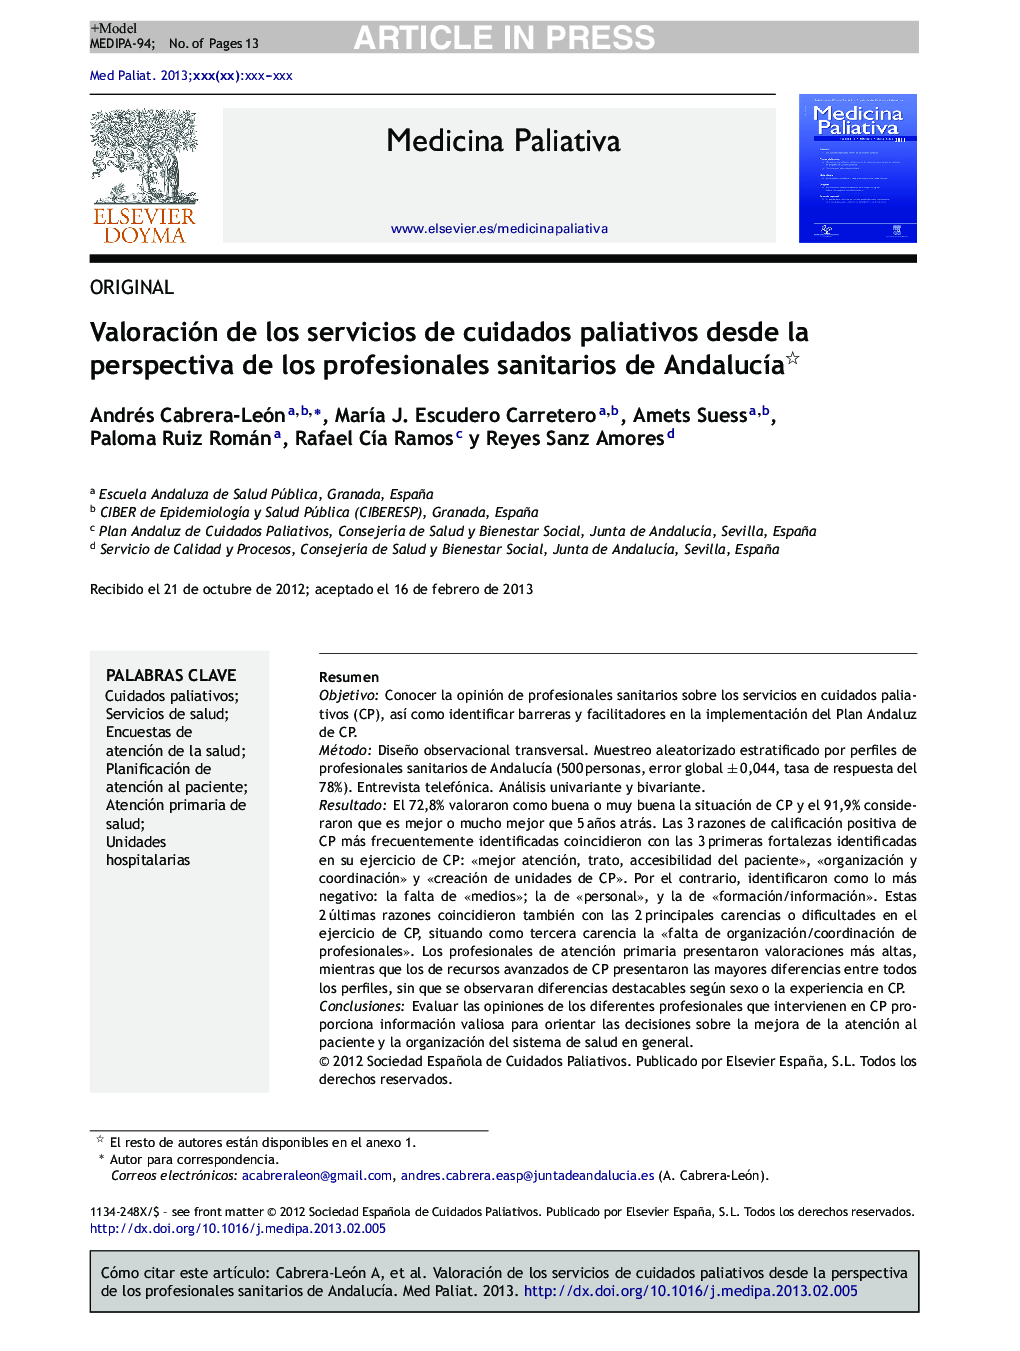 Valoración de los servicios de cuidados paliativos desde la perspectiva de los profesionales sanitarios de AndalucÃ­a